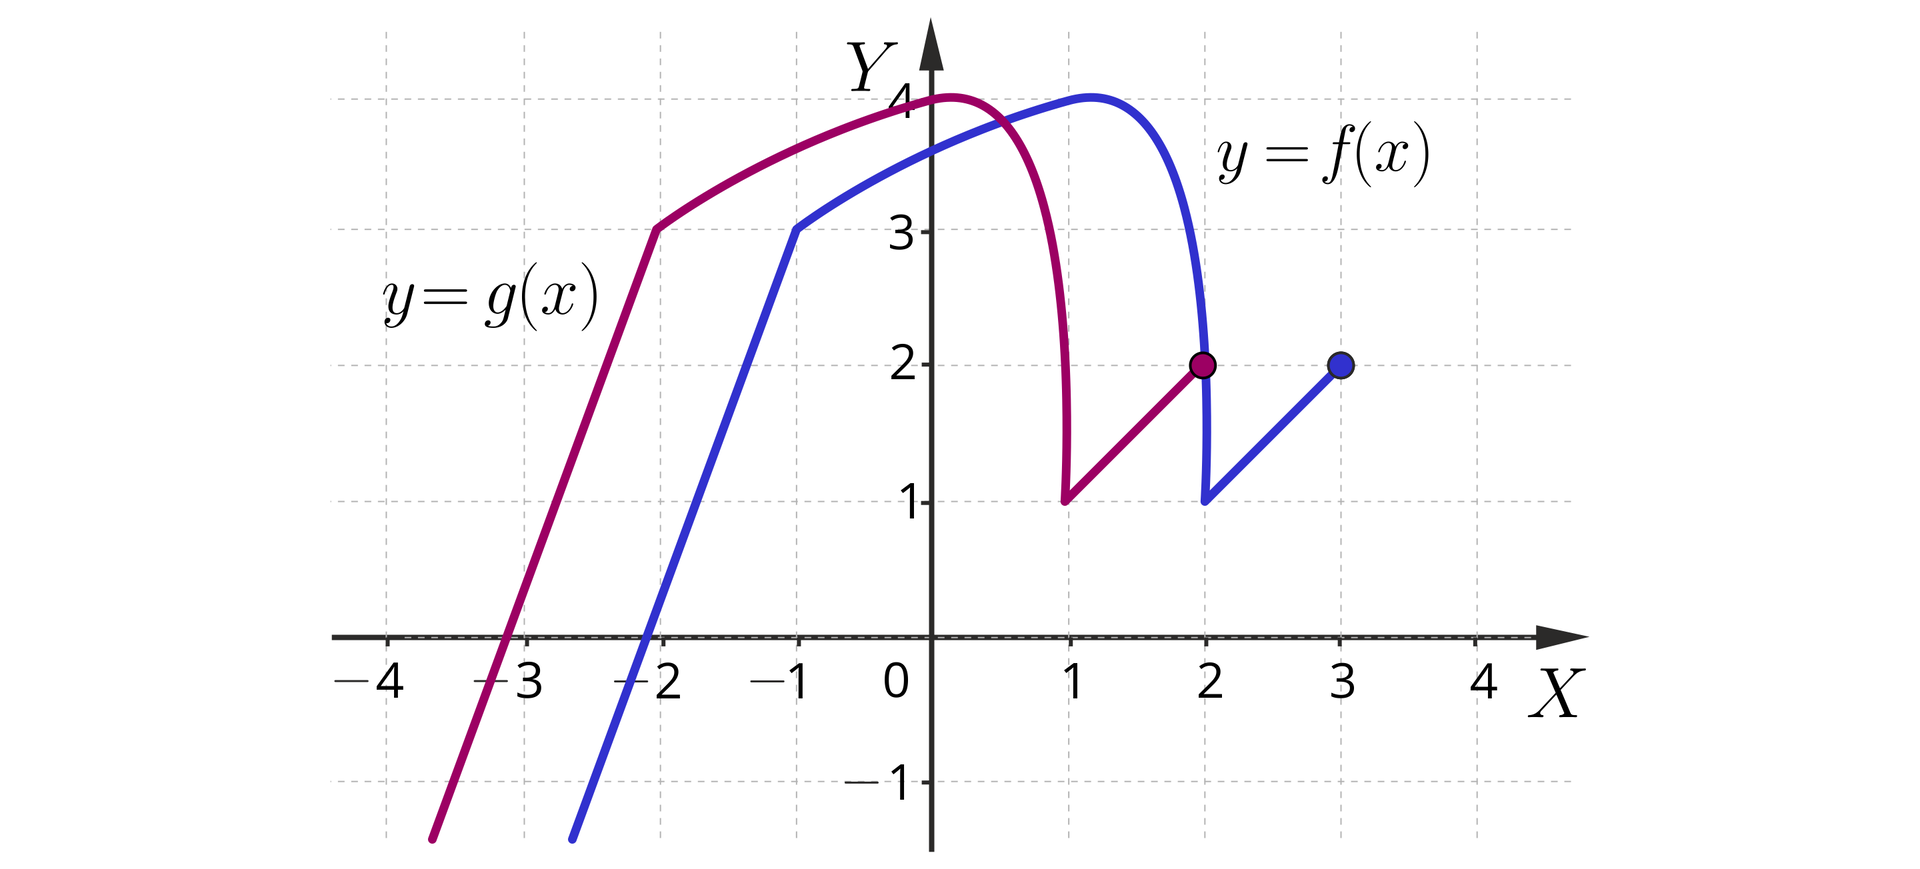 Ilustracja przedstawia układ współrzędnych z poziomą osią x od minus 4 do 4 i pionową osią y od minus 1 do cztery. W układzie zaznaczono dwa wykresy funkcji, pierwszy y=fx i drugi y=gx. Wykres y=fx pojawia się w płaszczyźnie układu w trzeciej ćwiartce układu i biegnie ukośnie do punktu nawias minus jeden średnik trzy zamknięcie nawiasu. Z tego punktu biegnie po łuku do punktu nawias jeden średnik cztery zamknięcie nawiasu, dalej również biegnie po łuku do punktu nawias dwa średnik jeden zamknięcie nawiasu, dalej biegnie ukośnie do zamalowanego punktu o współrzędnych nawias trzy średnik dwa zamknięcie nawiasu. Drugi wykres y=gx również pojawia się w płaszczyźnie układu w trzeciej ćwiartce układu i biegnie ukośnie do punktu nawias minus dwa średnik trzy zamknięcie nawiasu. Z tego punktu biegnie po łuku do punktu nawias zero średnik cztery zamknięcie nawiasu, dalej również biegnie po łuku do punktu nawias jeden średnik jeden zamknięcie nawiasu, dalej biegnie ukośnie do zamalowanego punktu o współrzędnych nawias dwa średnik dwa zamknięcie nawiasu. 